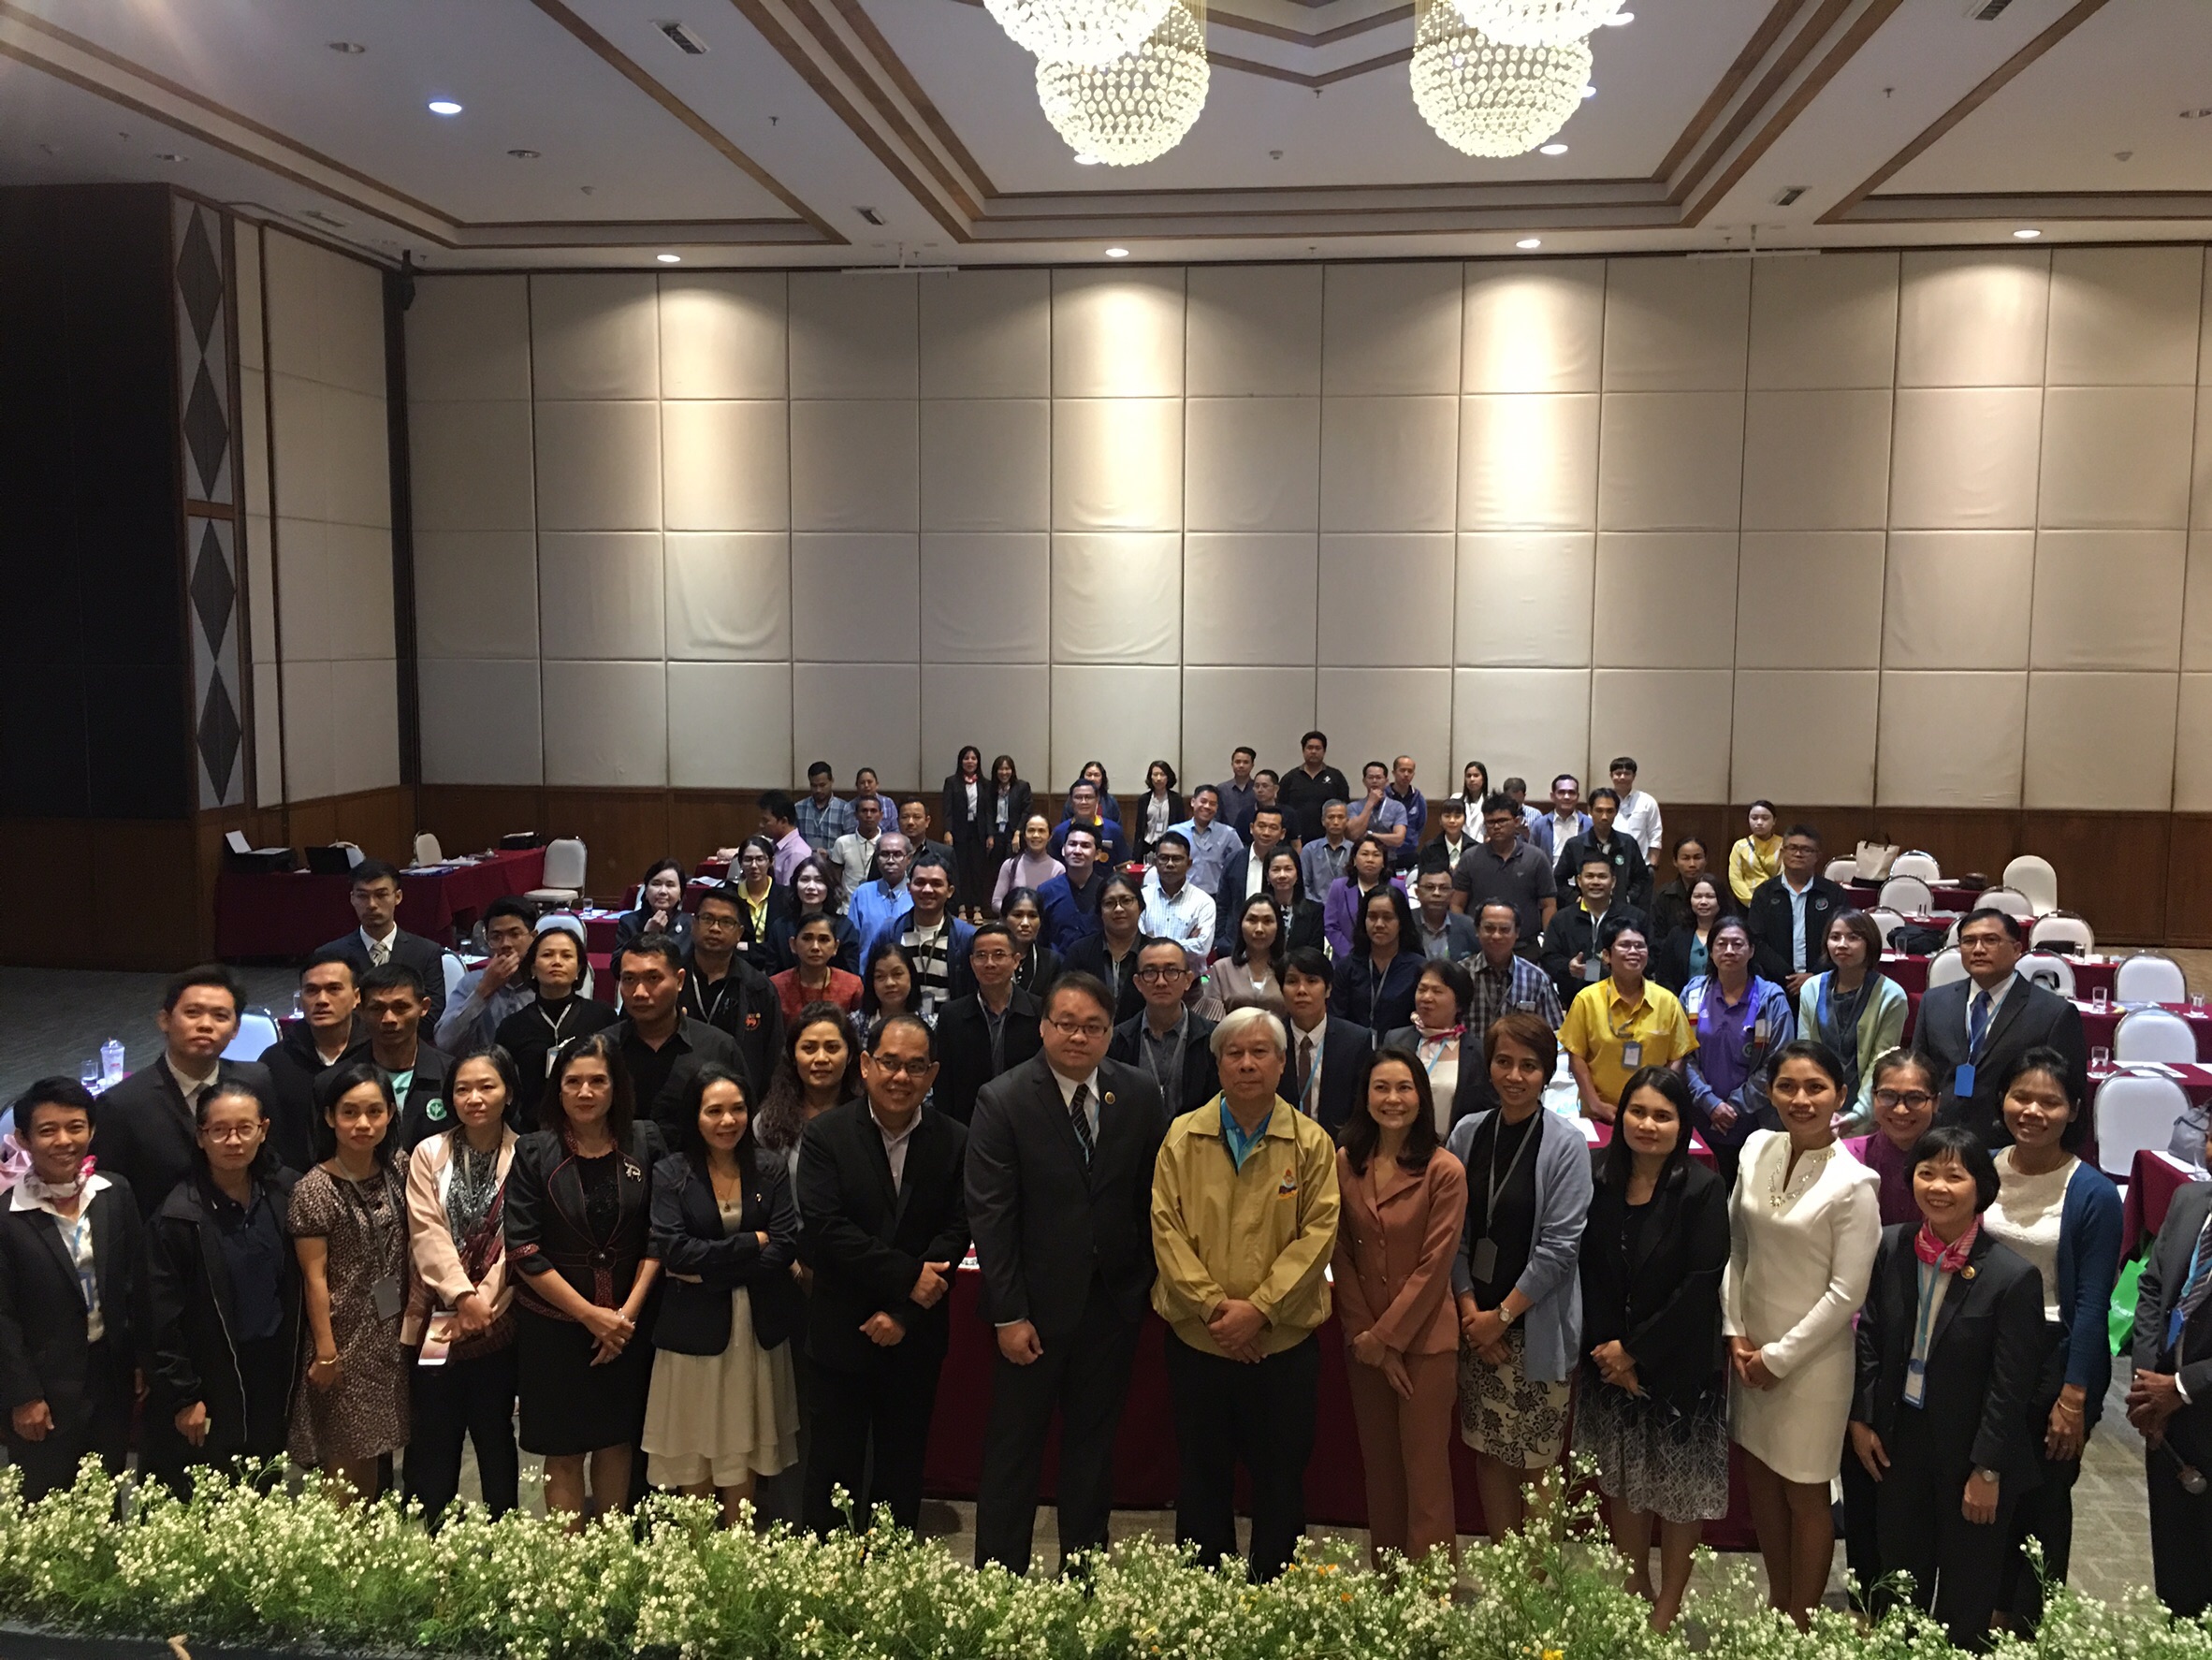 ประชุมวิชาการร่วมกับรังสีการแพทย์แห่งประเทศไทย ครั้งที่17 27-29 พ.ย. - พร้อมเข้าเยี่ยมและให้กำลังใจหน่วยงานรังสีวิทยาในพื้นที่จังหวัดอุบลราชธานีระหว่างวันที่ 25-26 พฤศจิกายน 2562 20